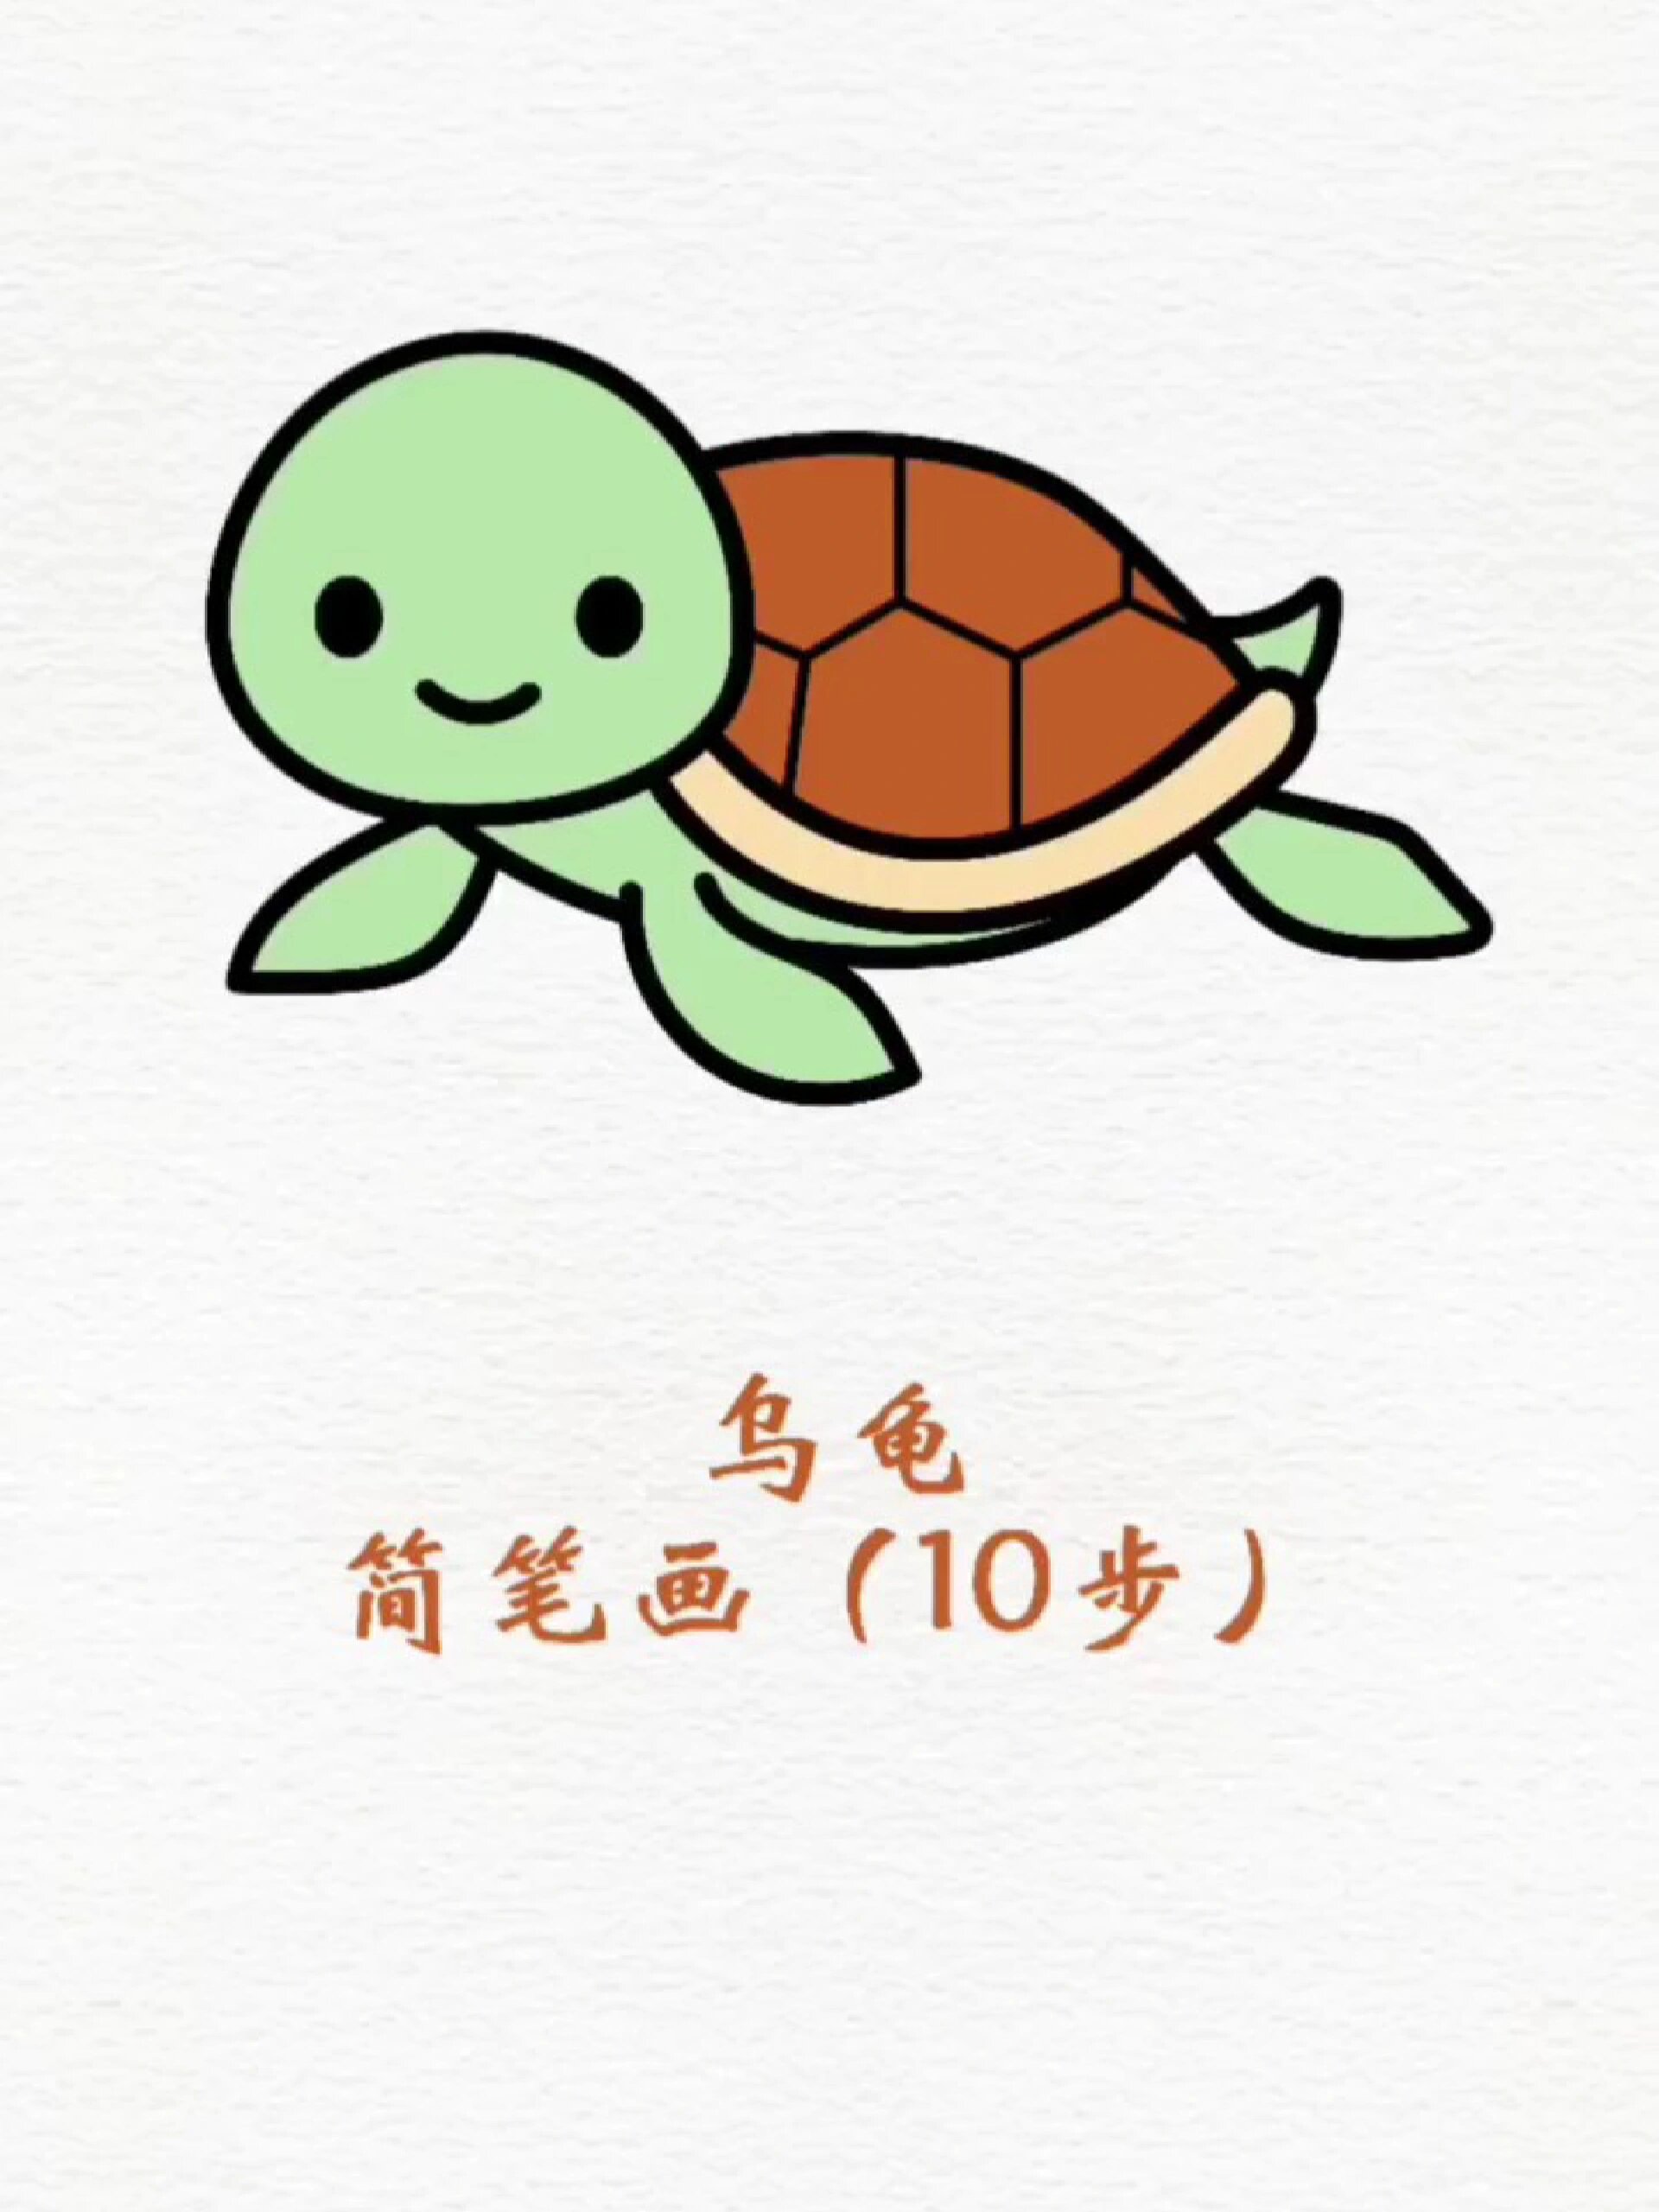 乌龟简笔画卡通彩色图片